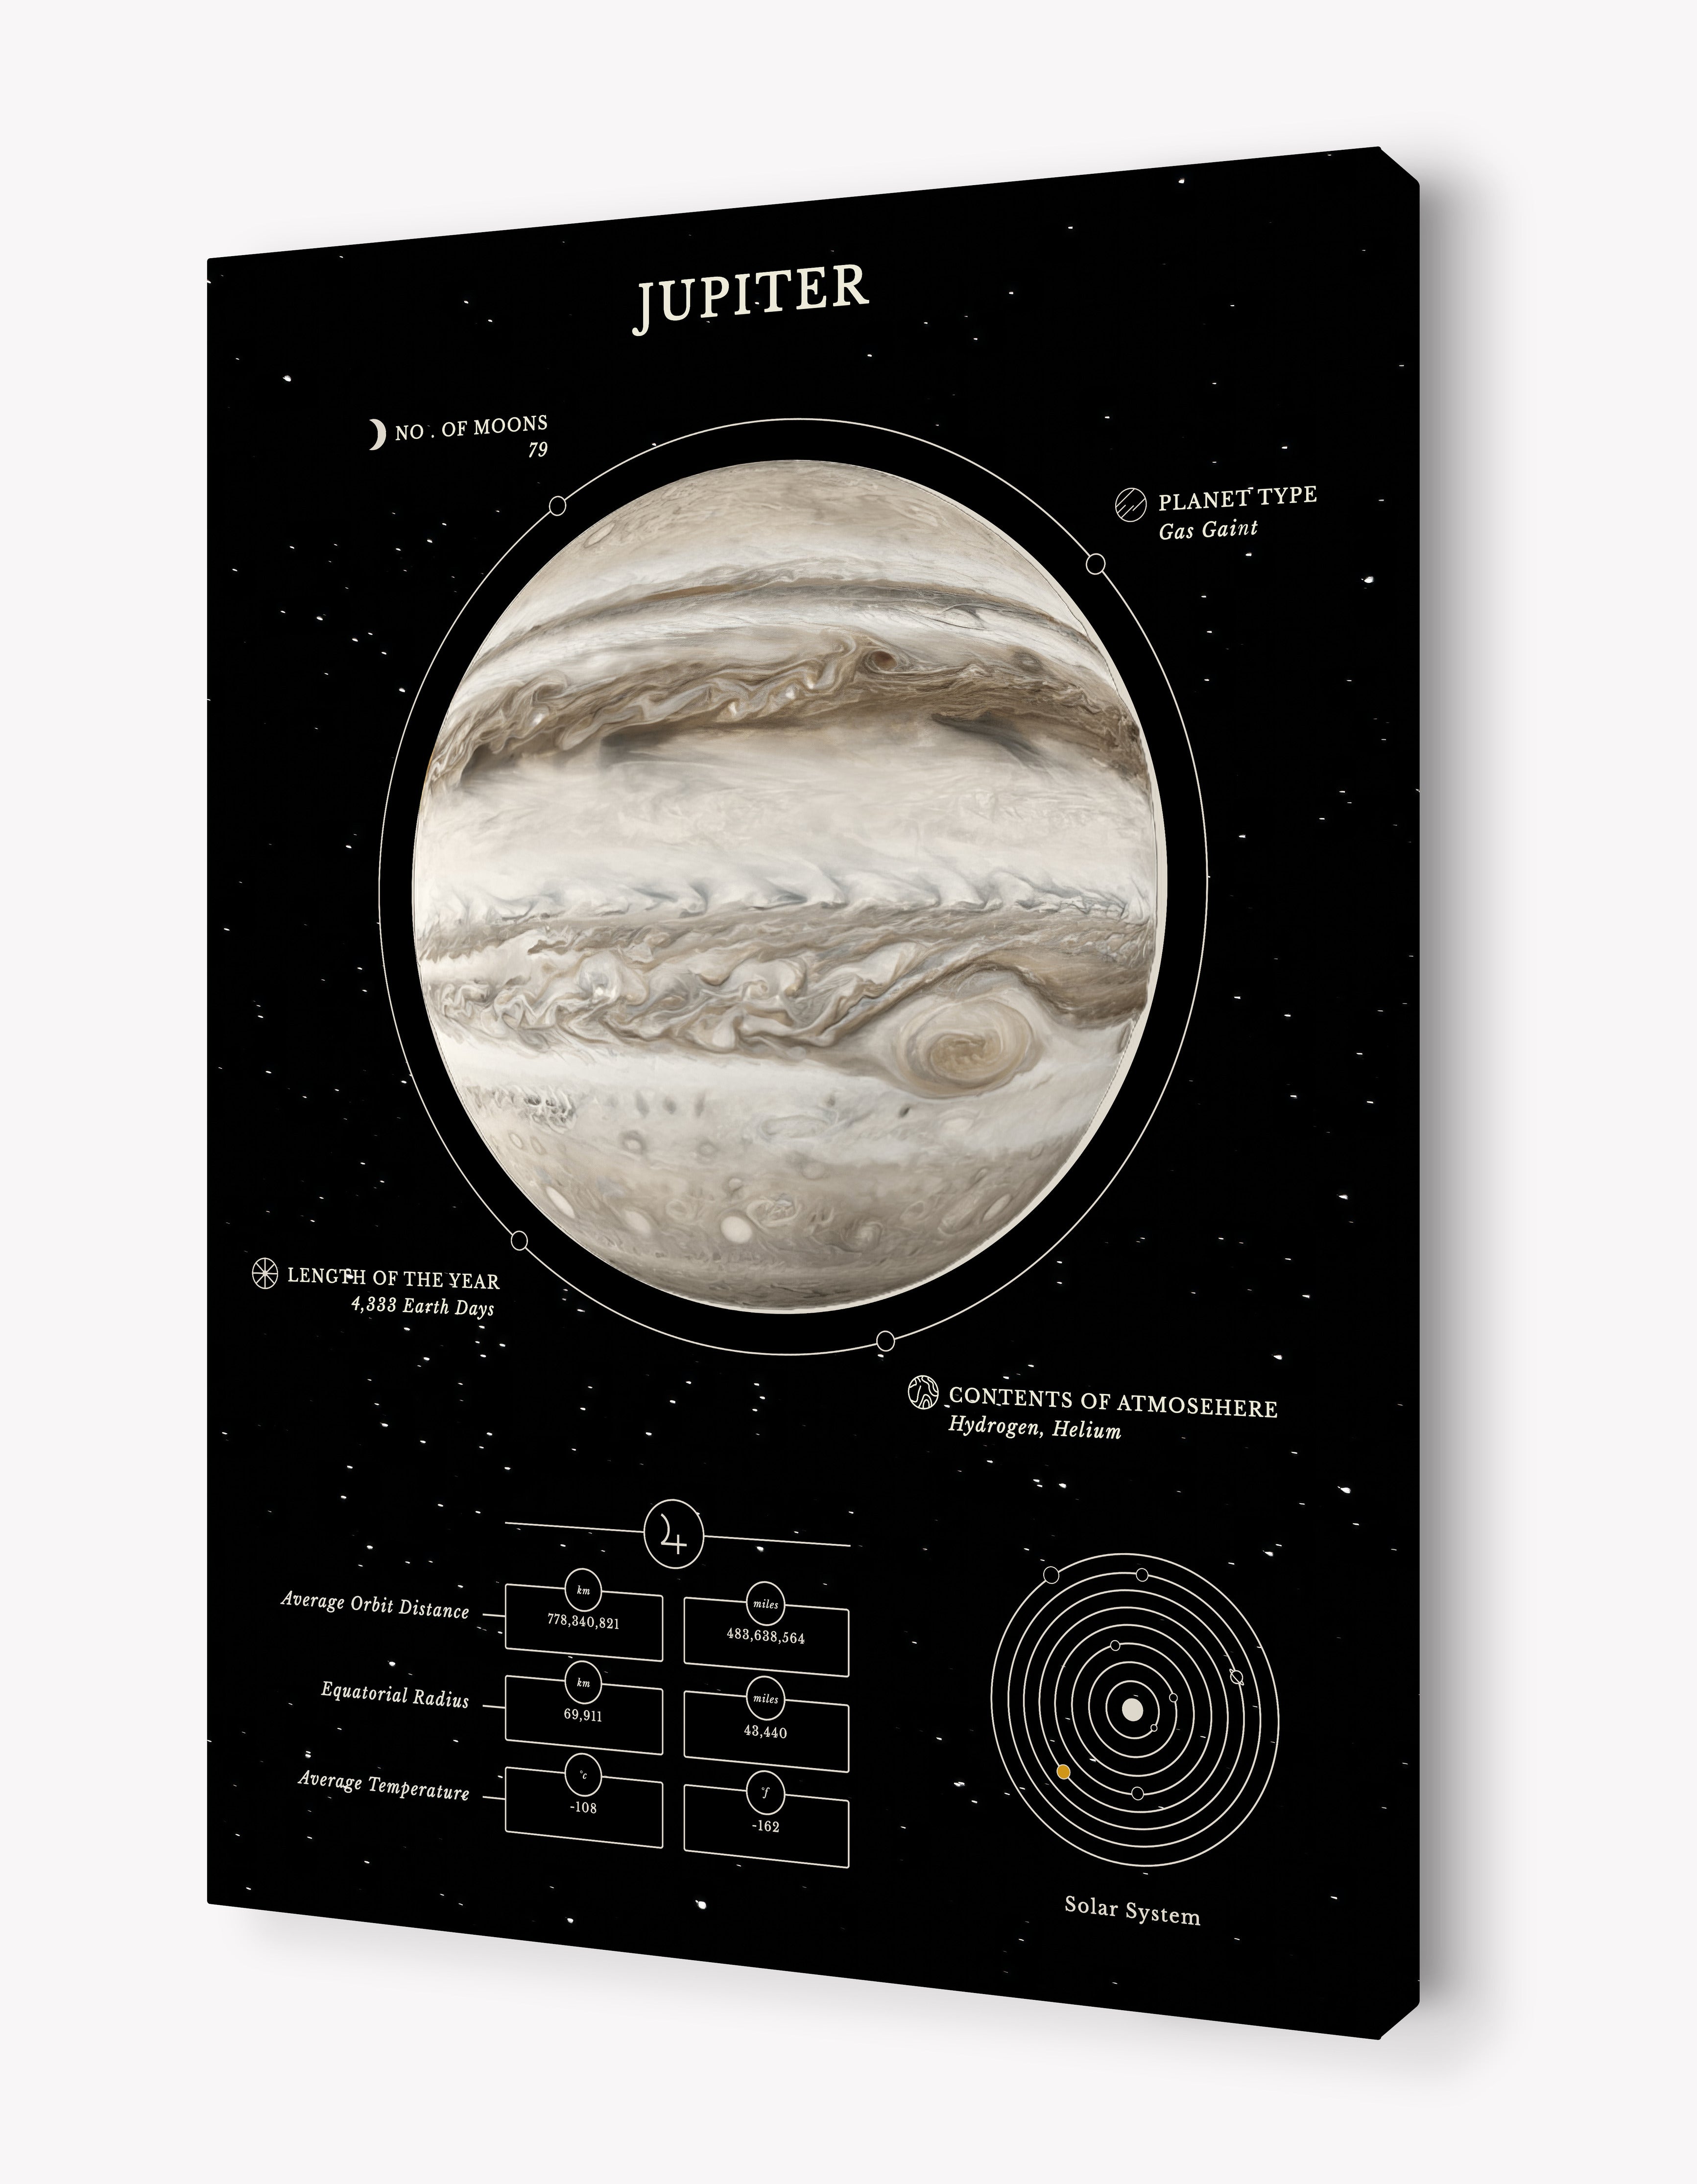 The Jupiter